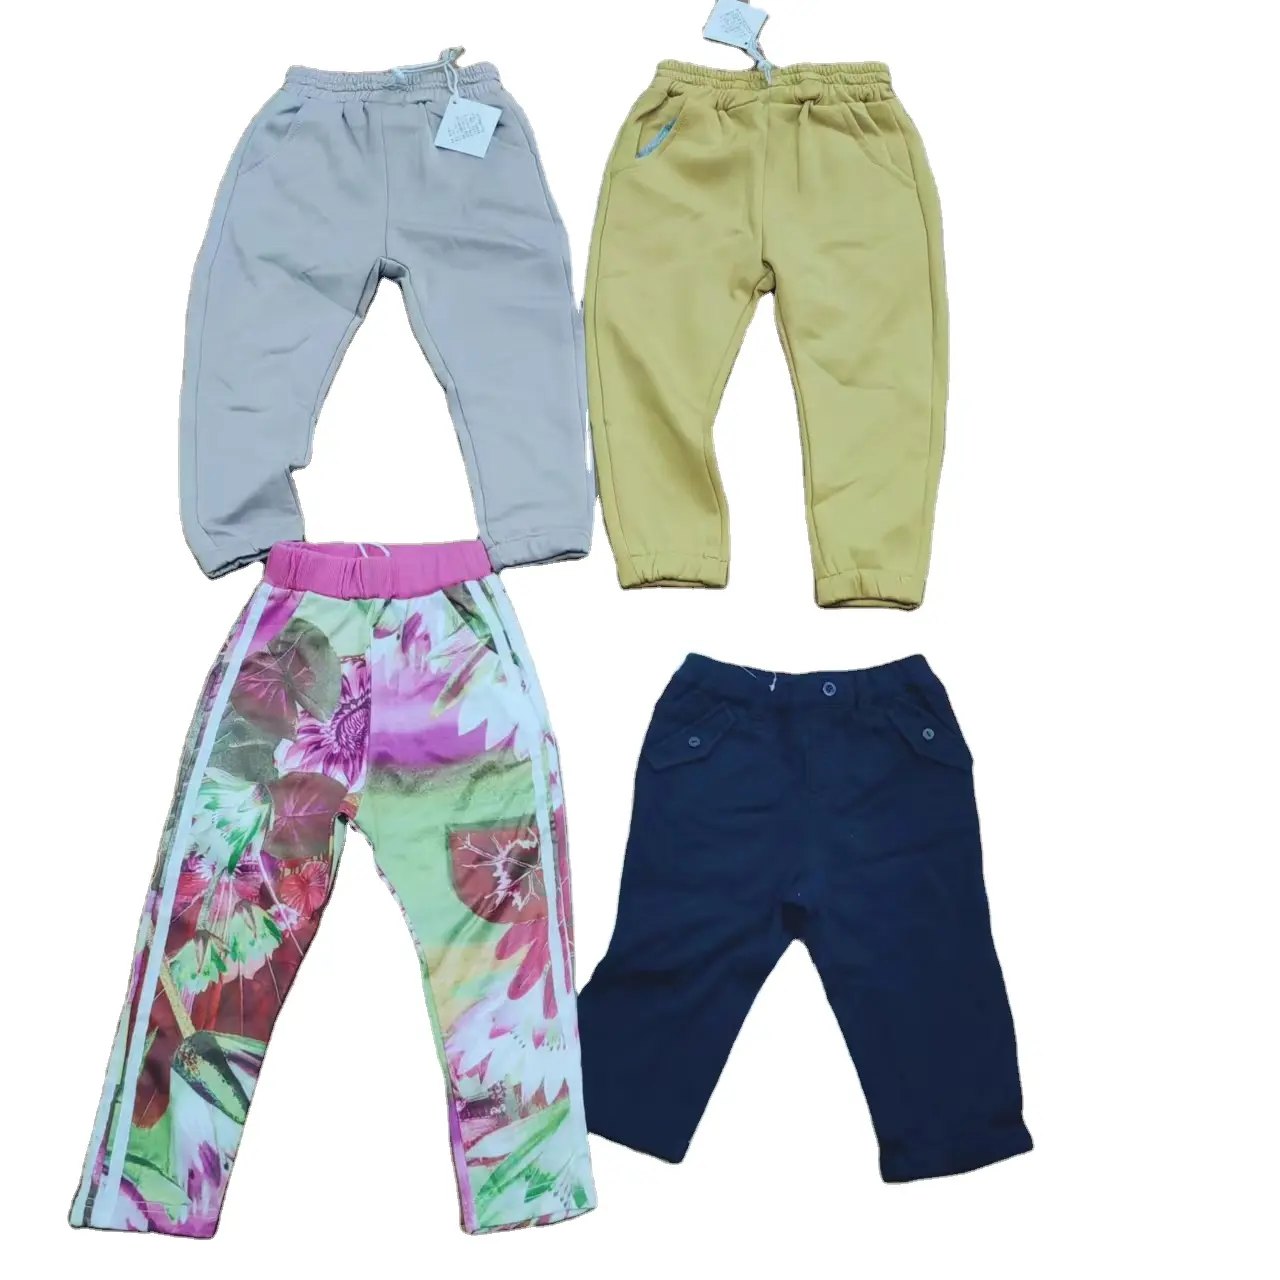 男の子と女の子の子供のための安い販売のズボン子供綿カジュアルパンツ新しい美しいパターンのパンツ